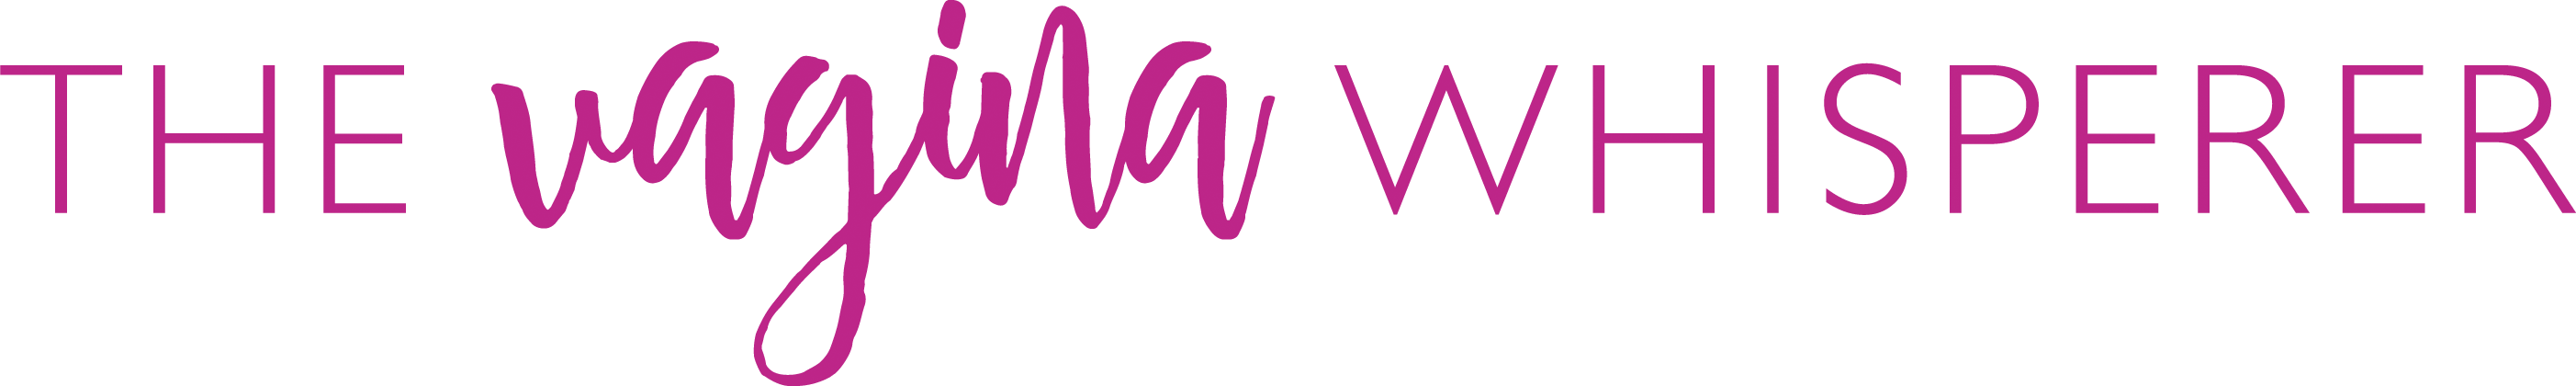 The Vagina Whisperer logo